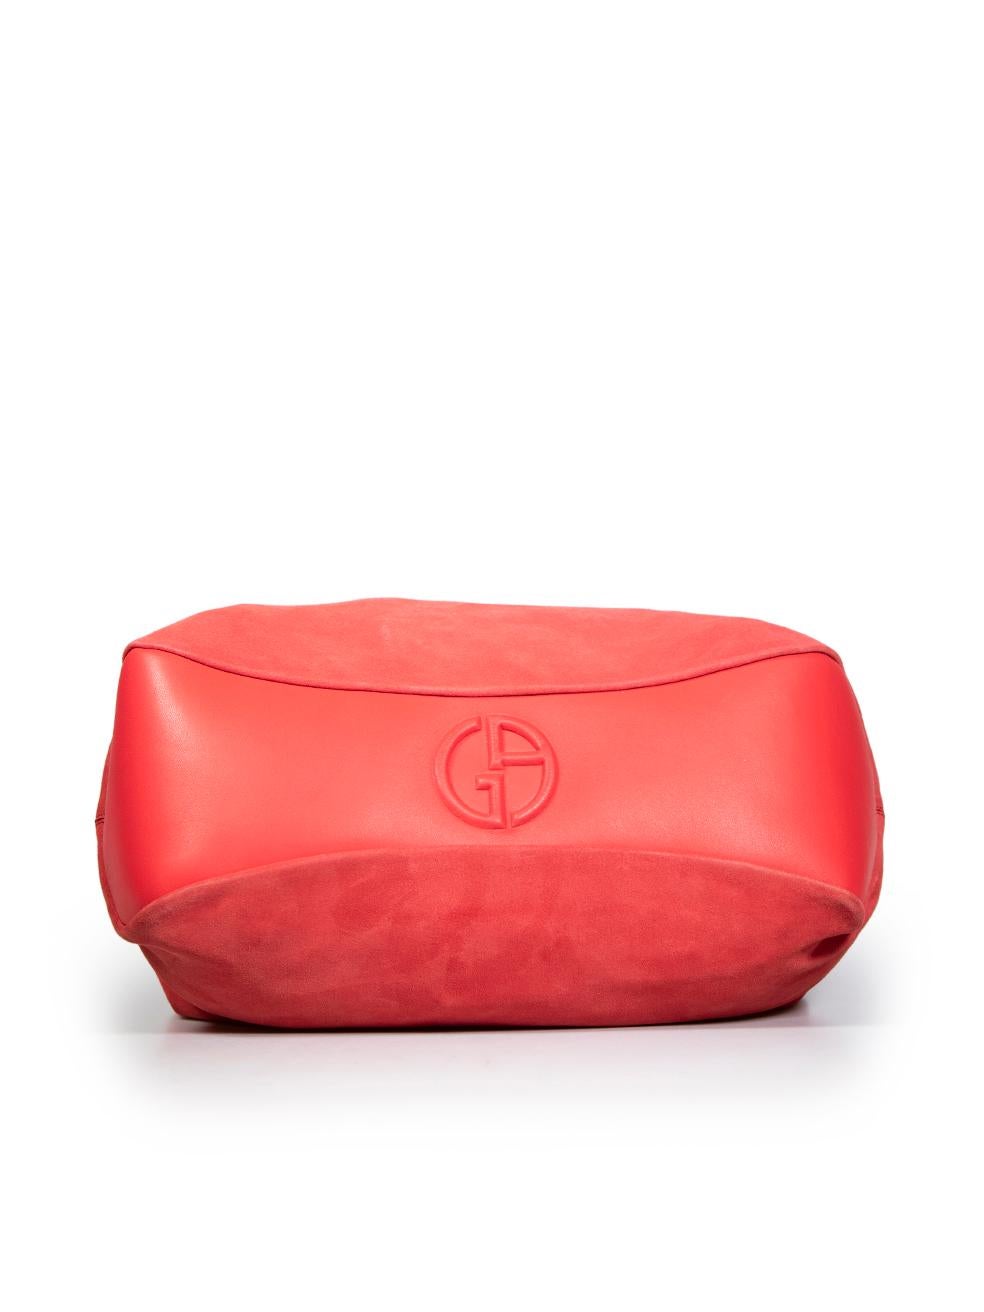 Women's Giorgio Armani Red Suede Tote Bag For Sale